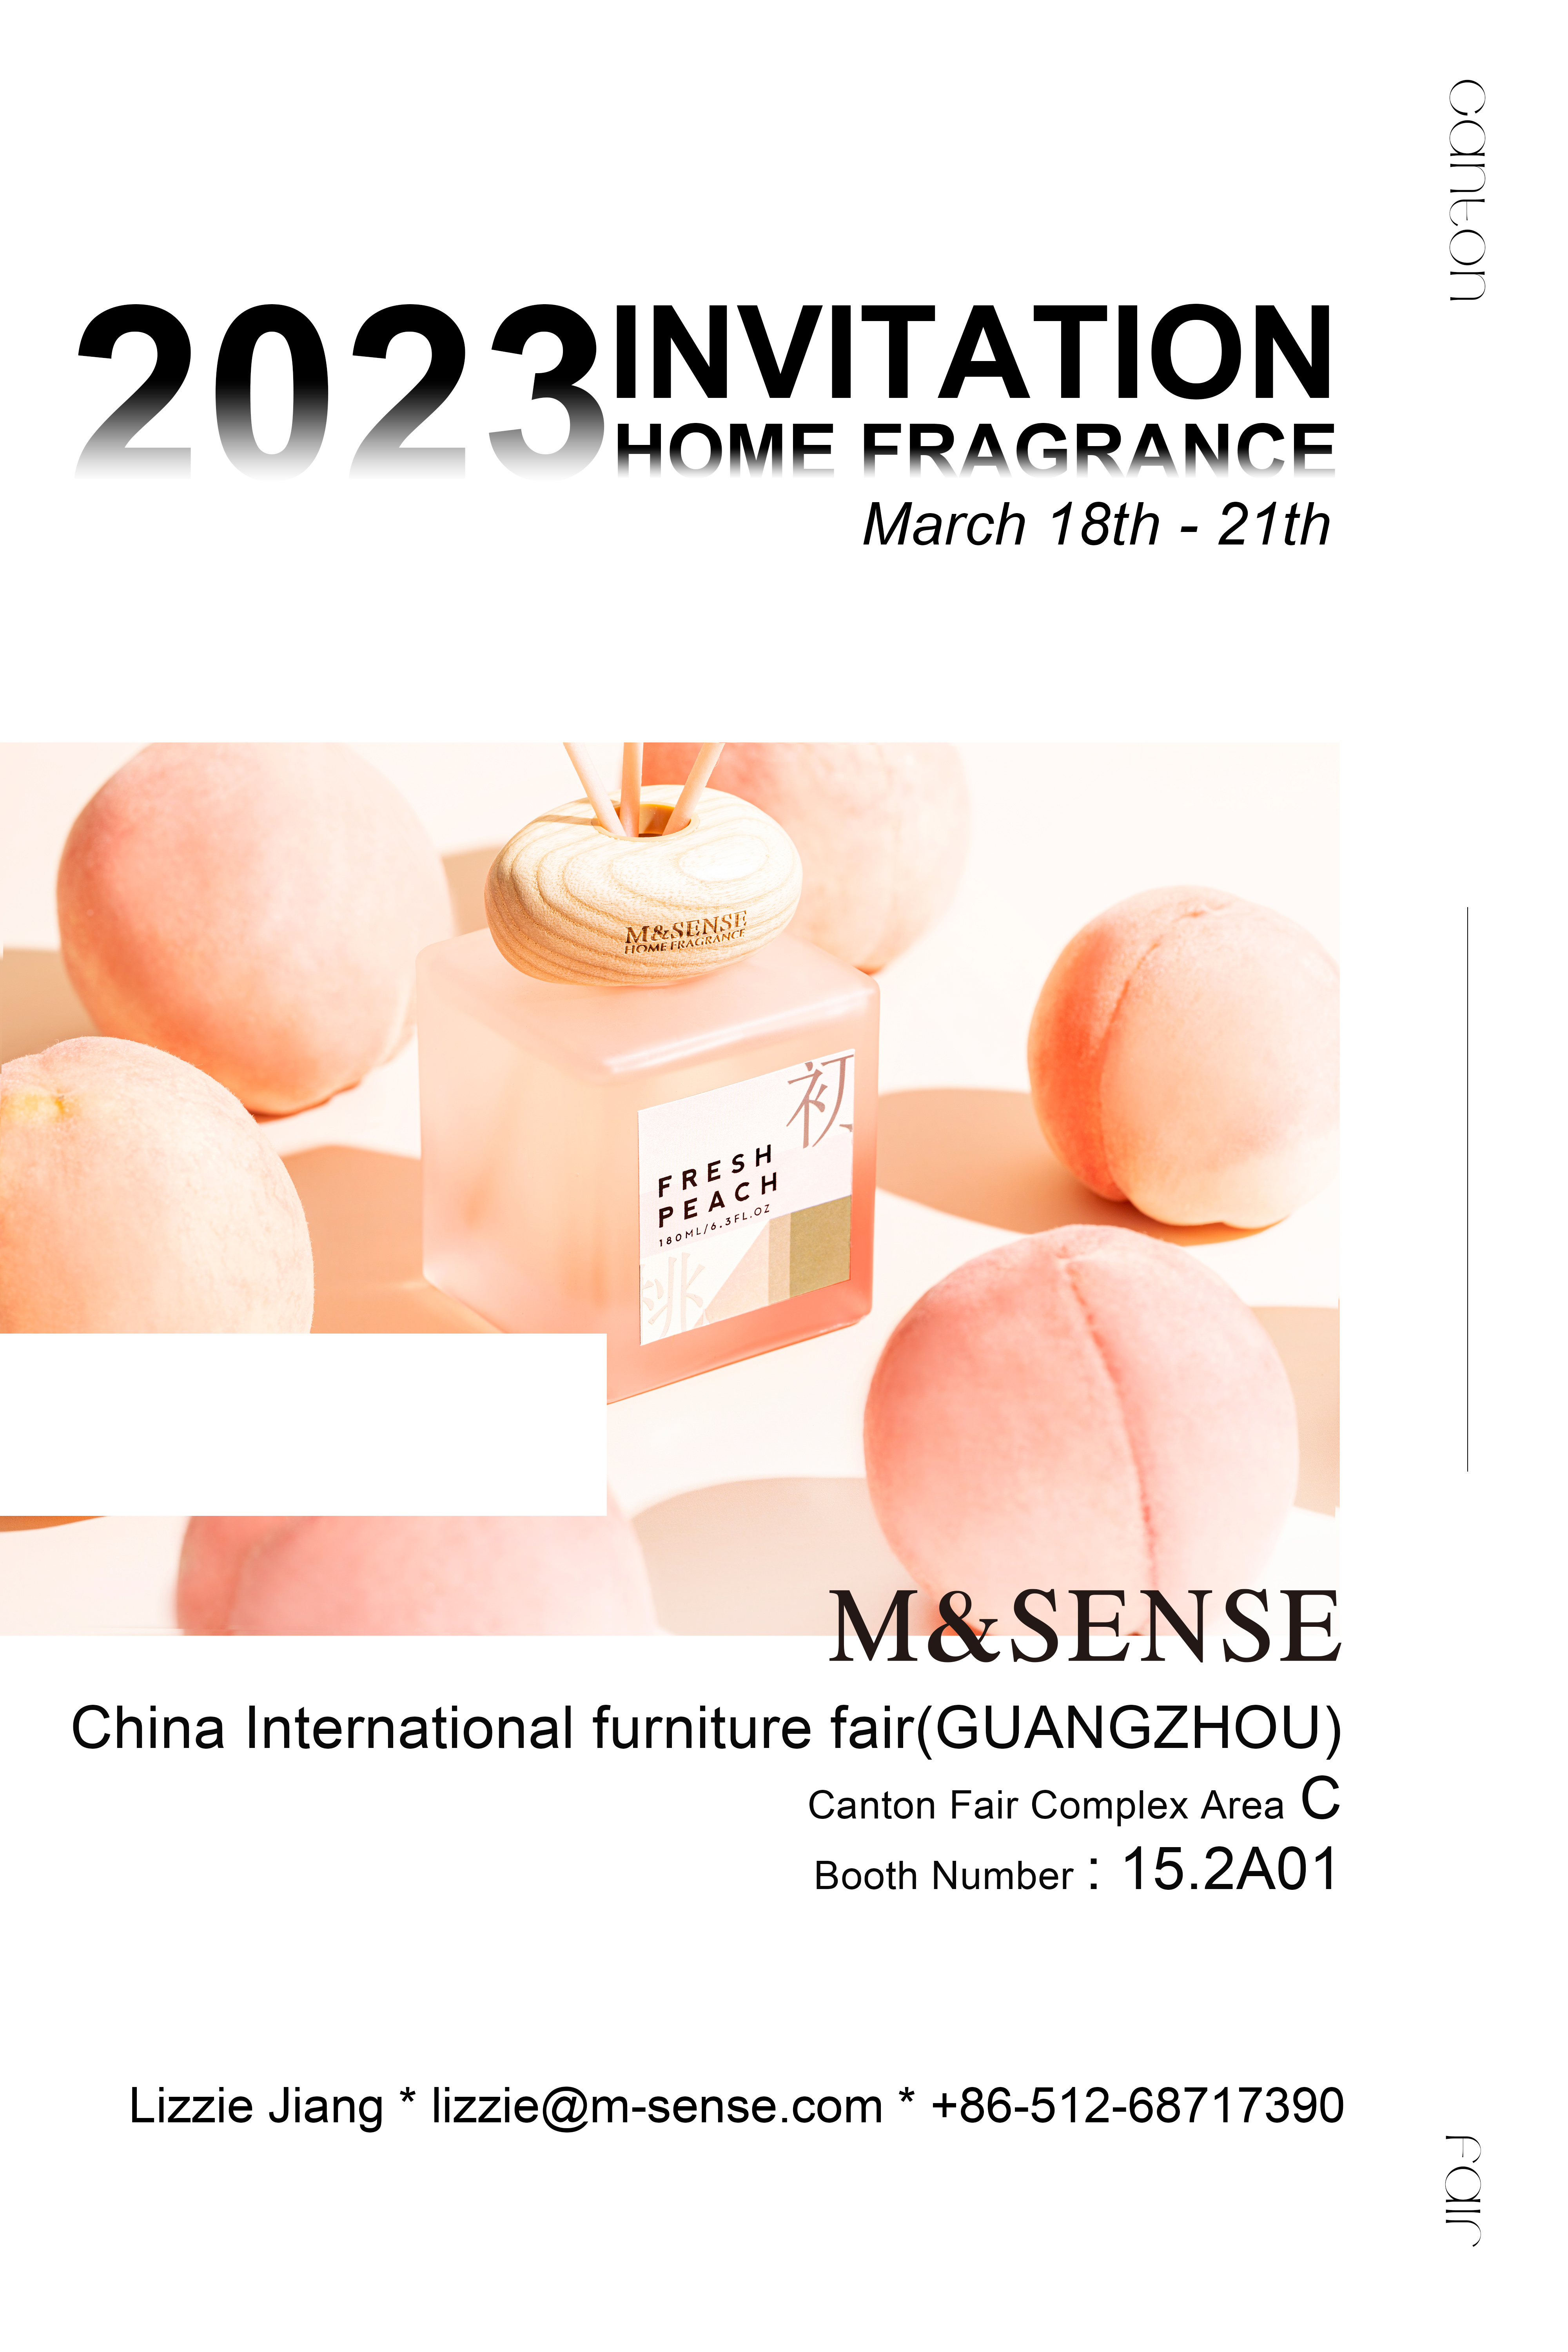 M&Sense home fragrances will participate in CIFF